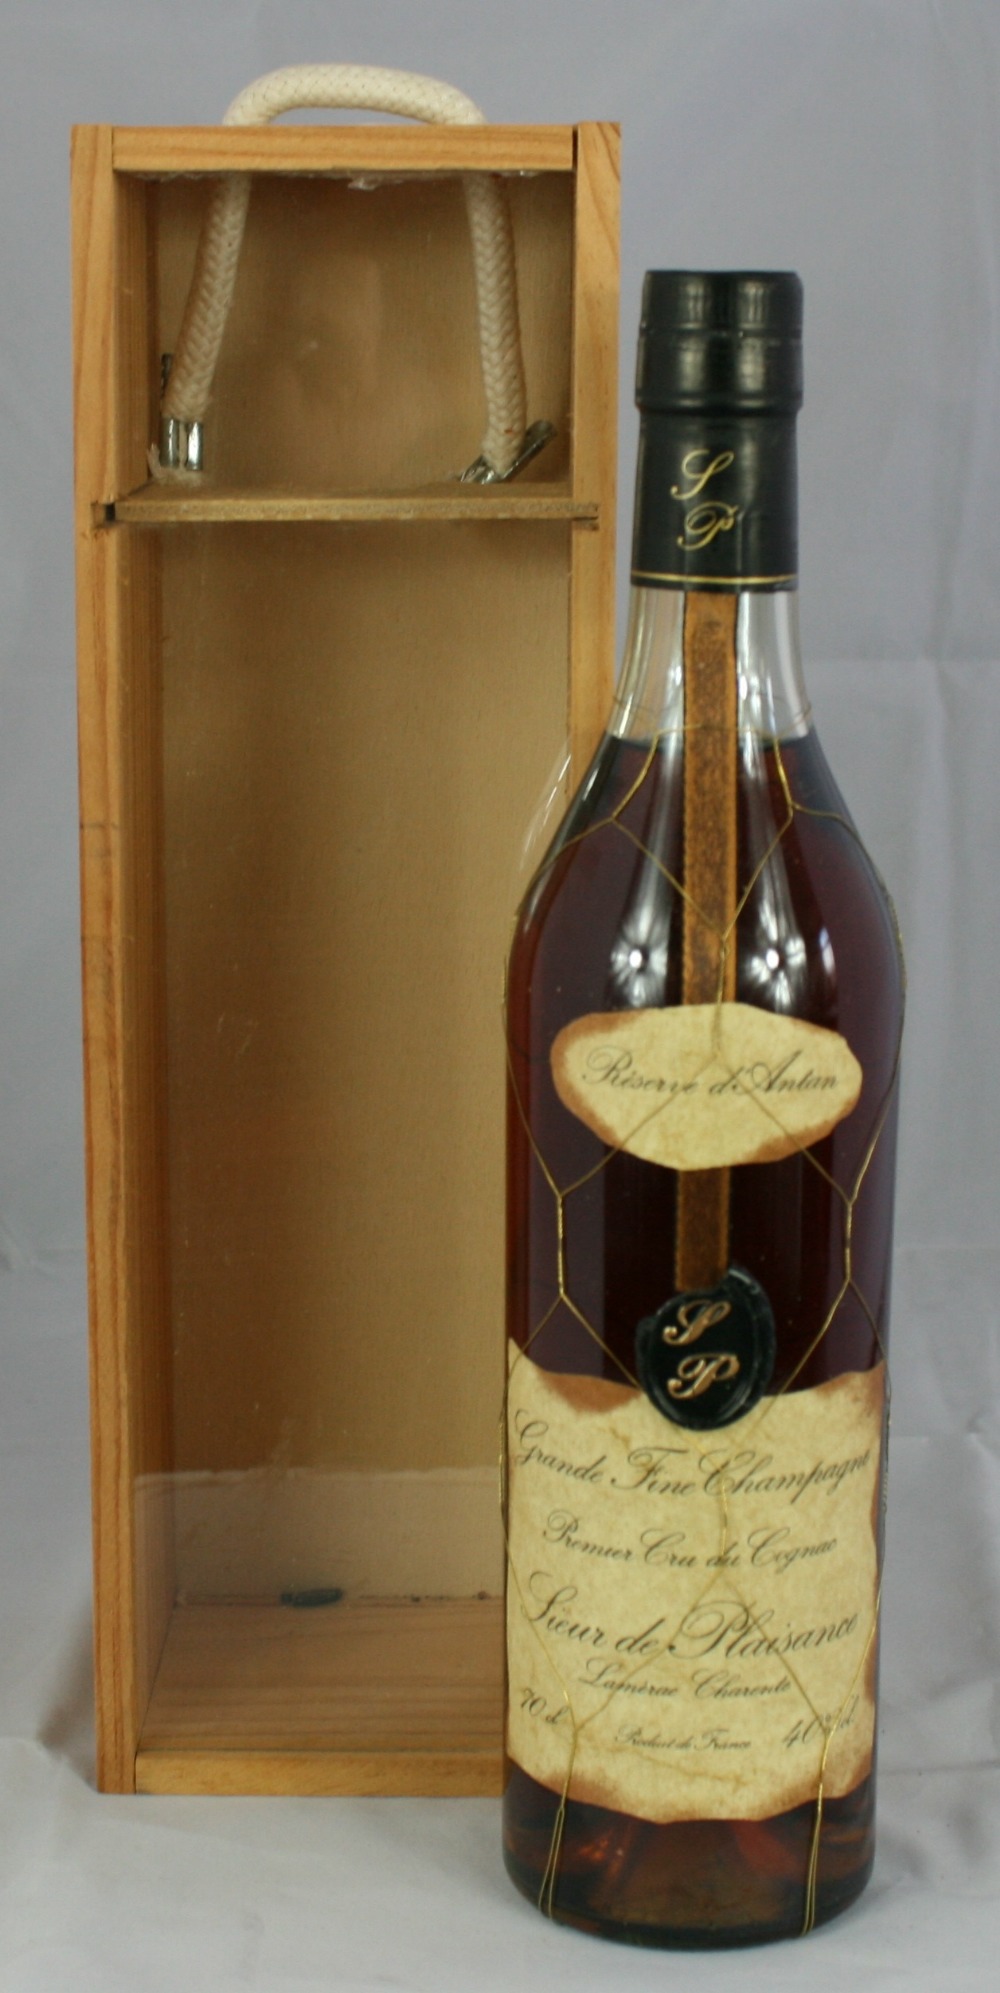 SIEUR de PLAISANCE - bottle of Reservé d´Antan Grande Fine Champagne Premier Cru du Cognac in wooden